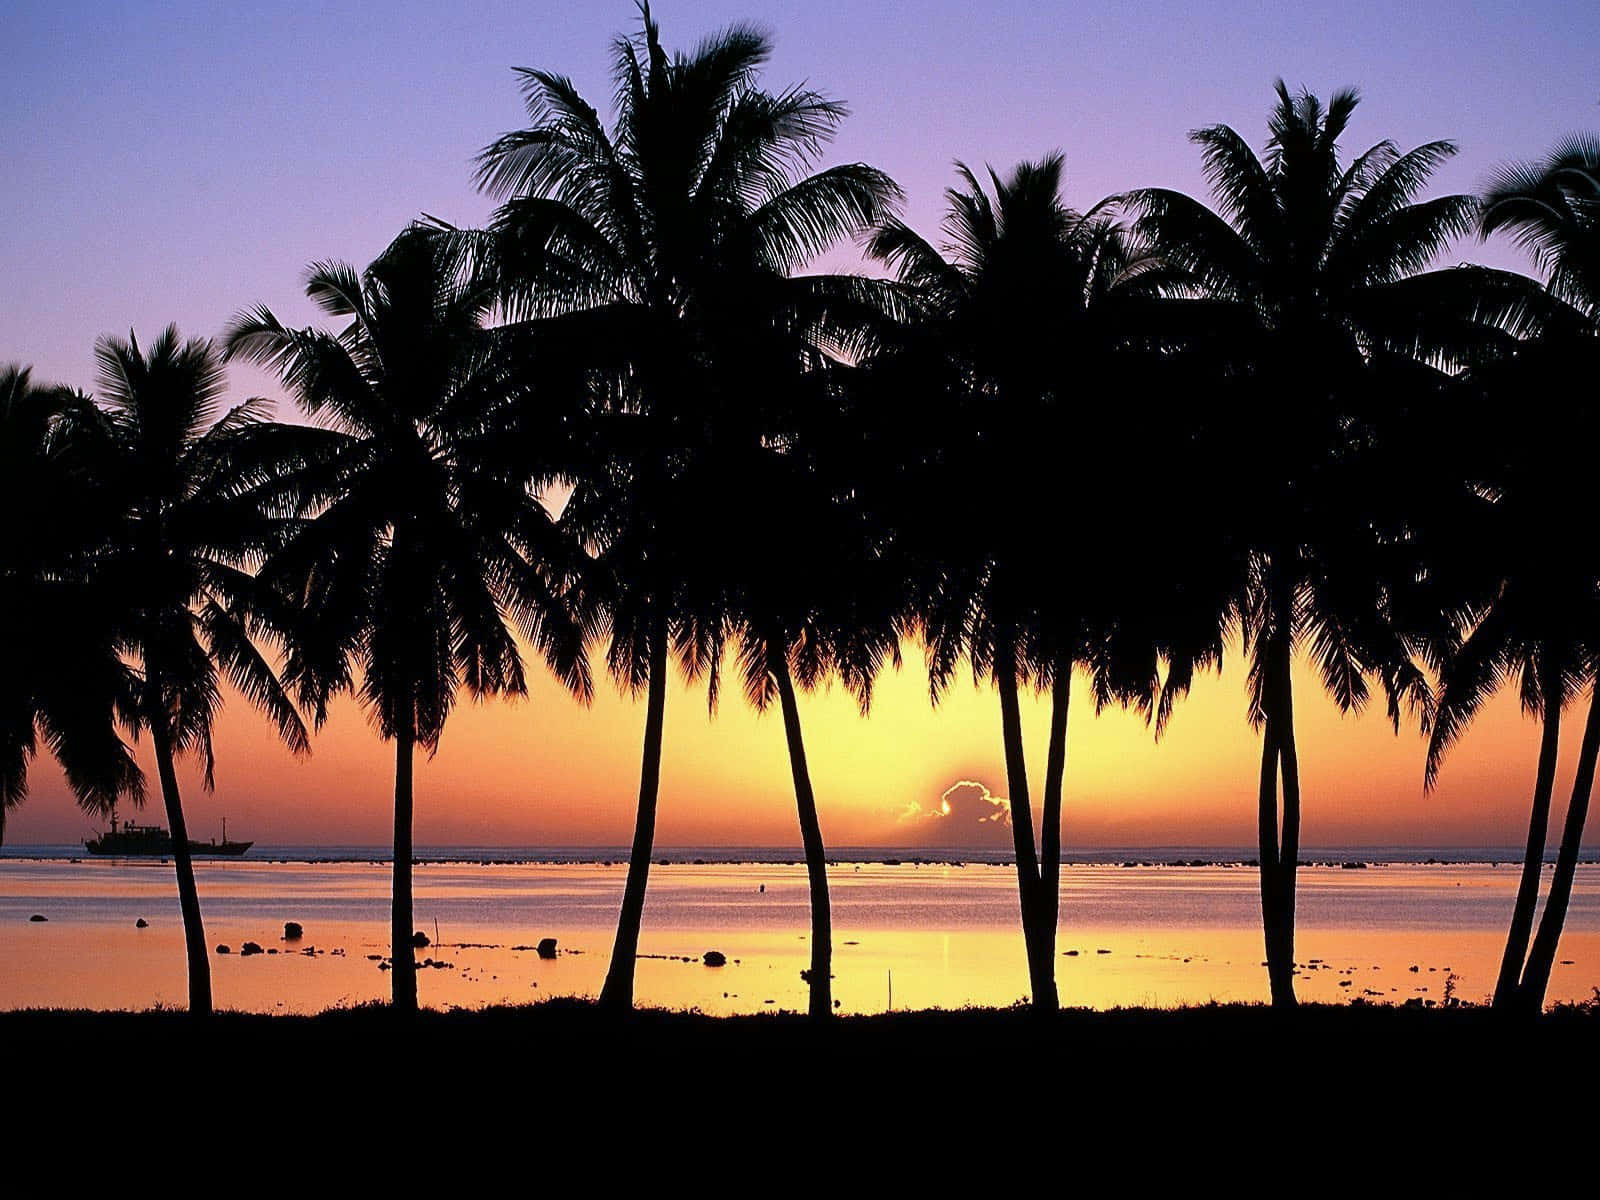 Experience a tranquil Hawaiian sunset. Wallpaper